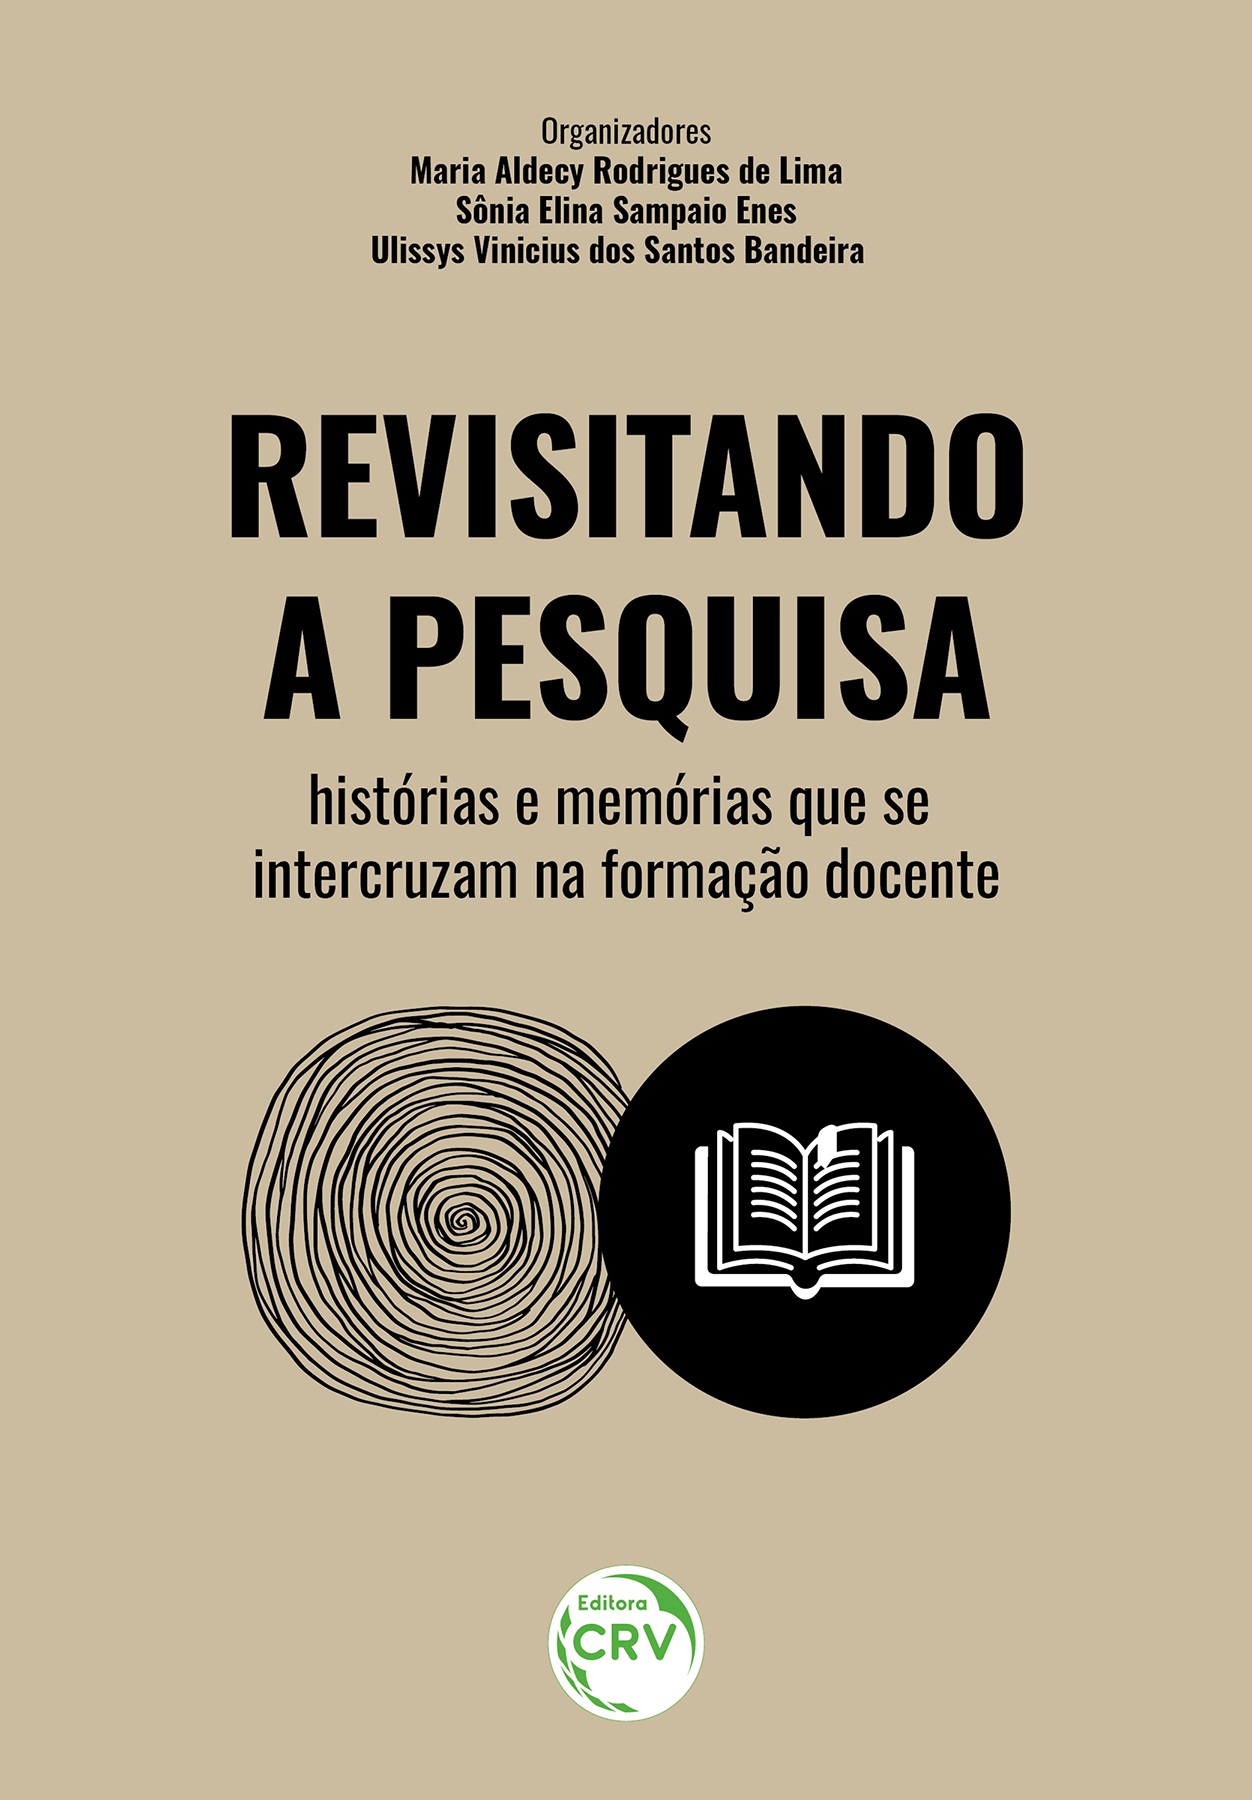 Inscreva-se by João Oliveira V4 Remus & Associados - LottieFiles